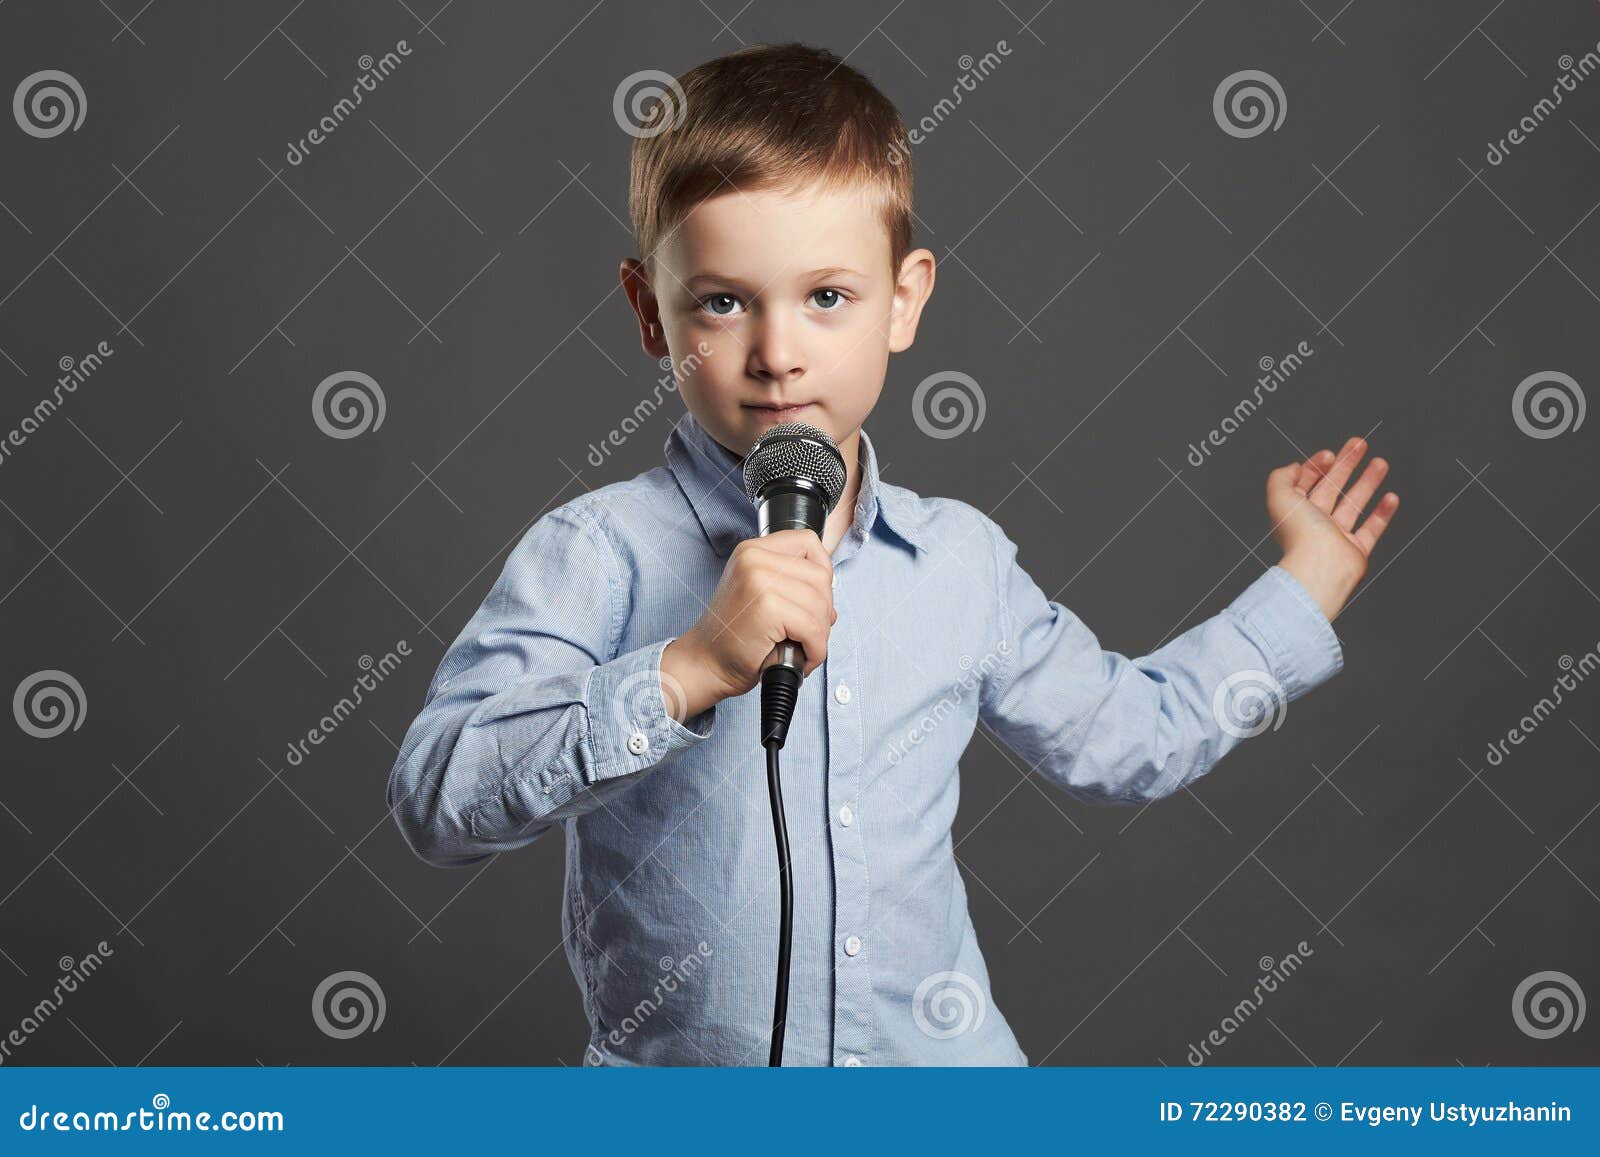 Мальчики пои. Мальчик с микрофоном. Малыш с микрофоном. Мальчик поет в микрофон. Школьник с микрофоном.